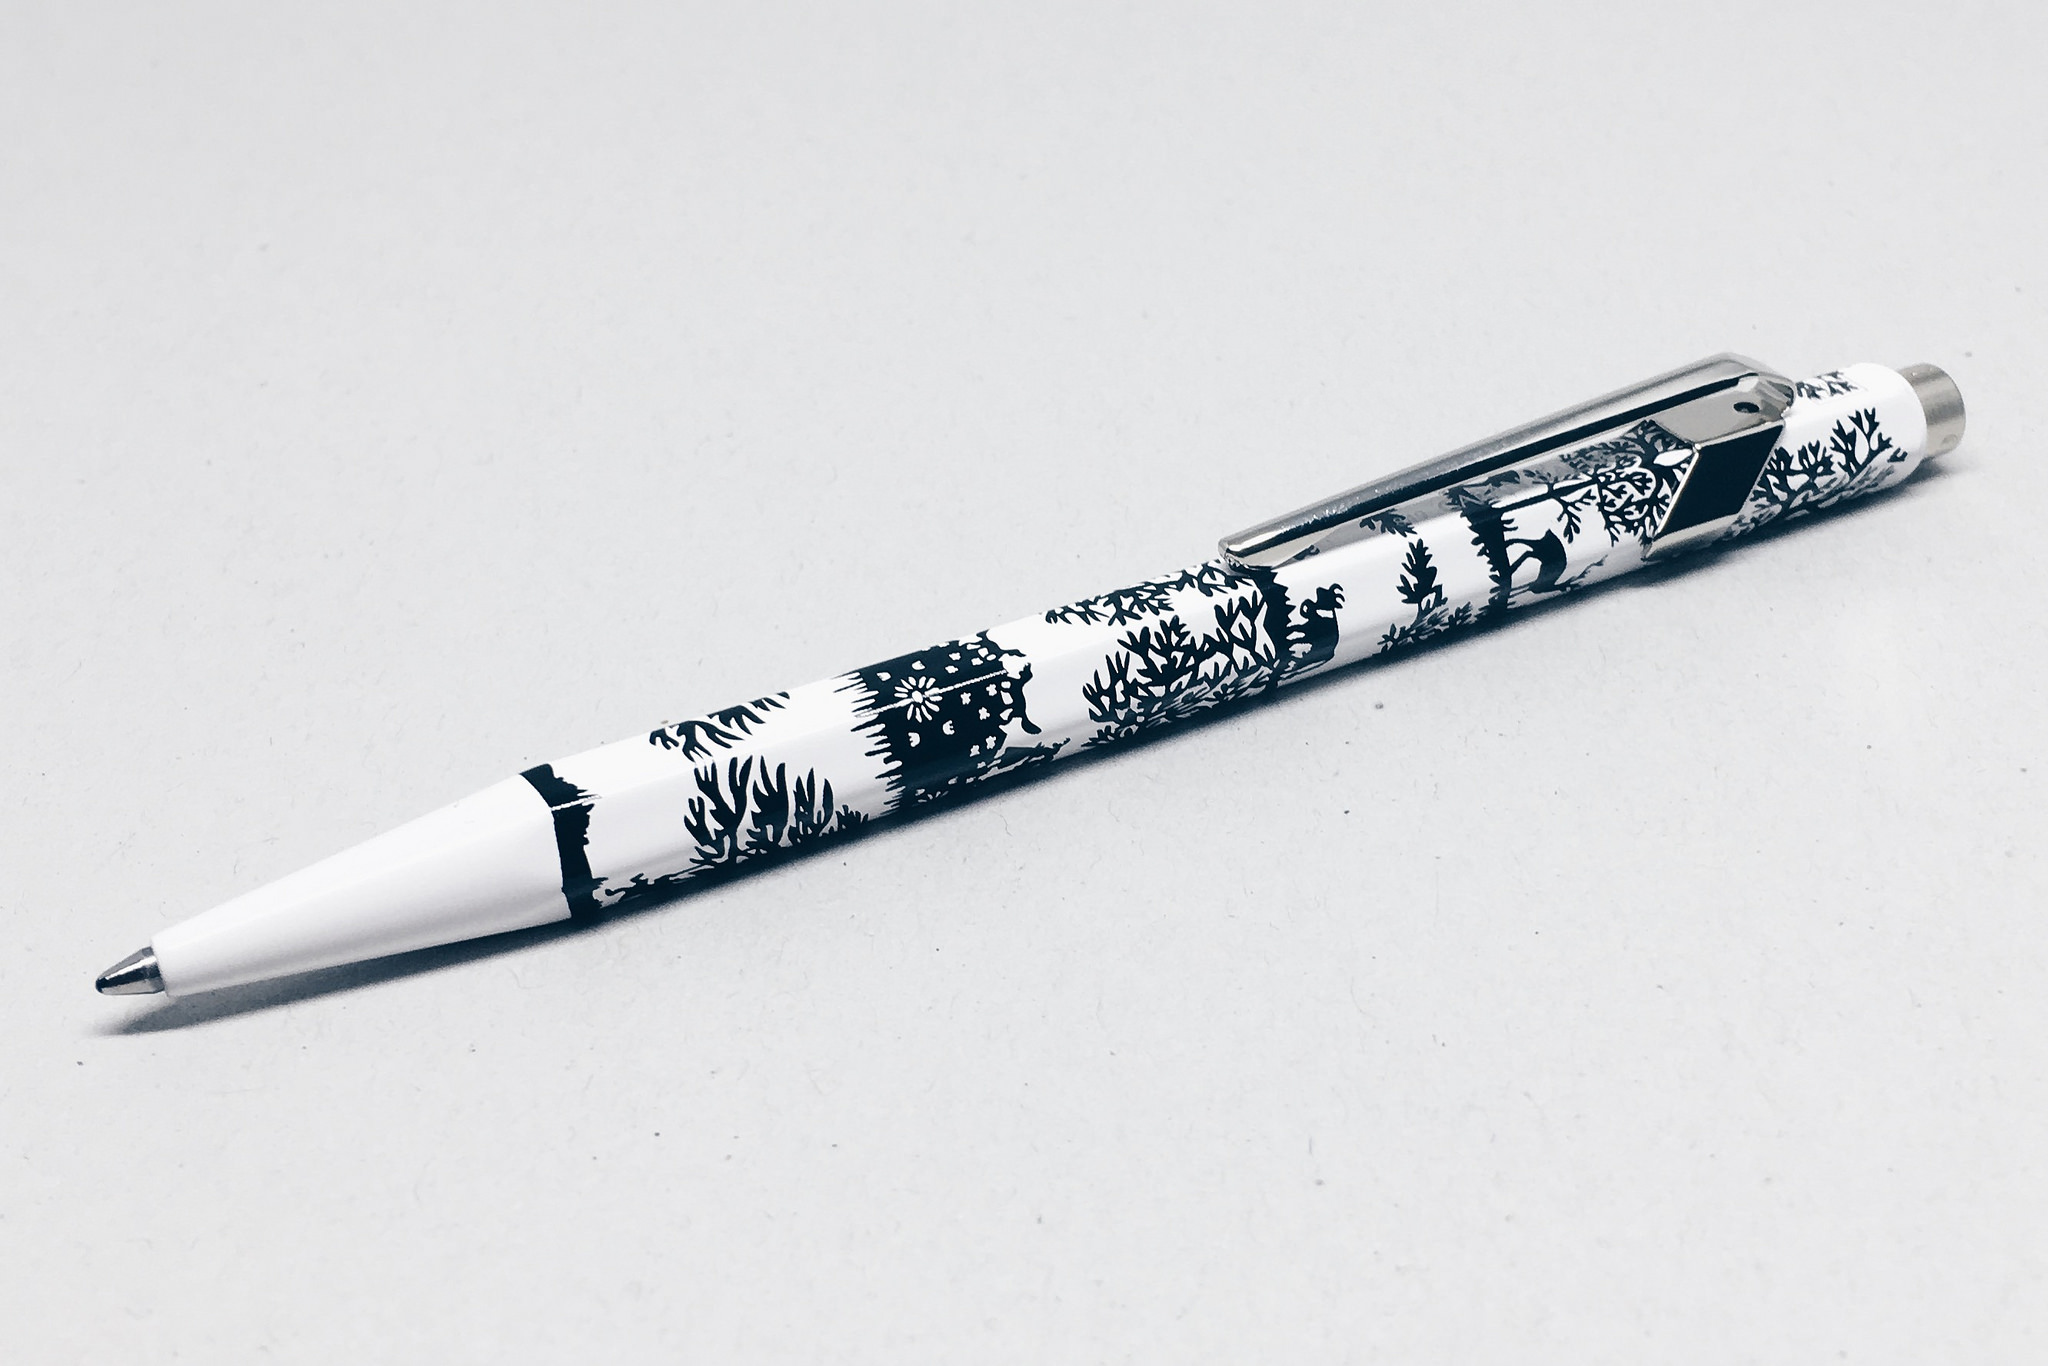 Caran d'Ache 849 Metal Ballpoint Pen in Black - Goldspot Pens